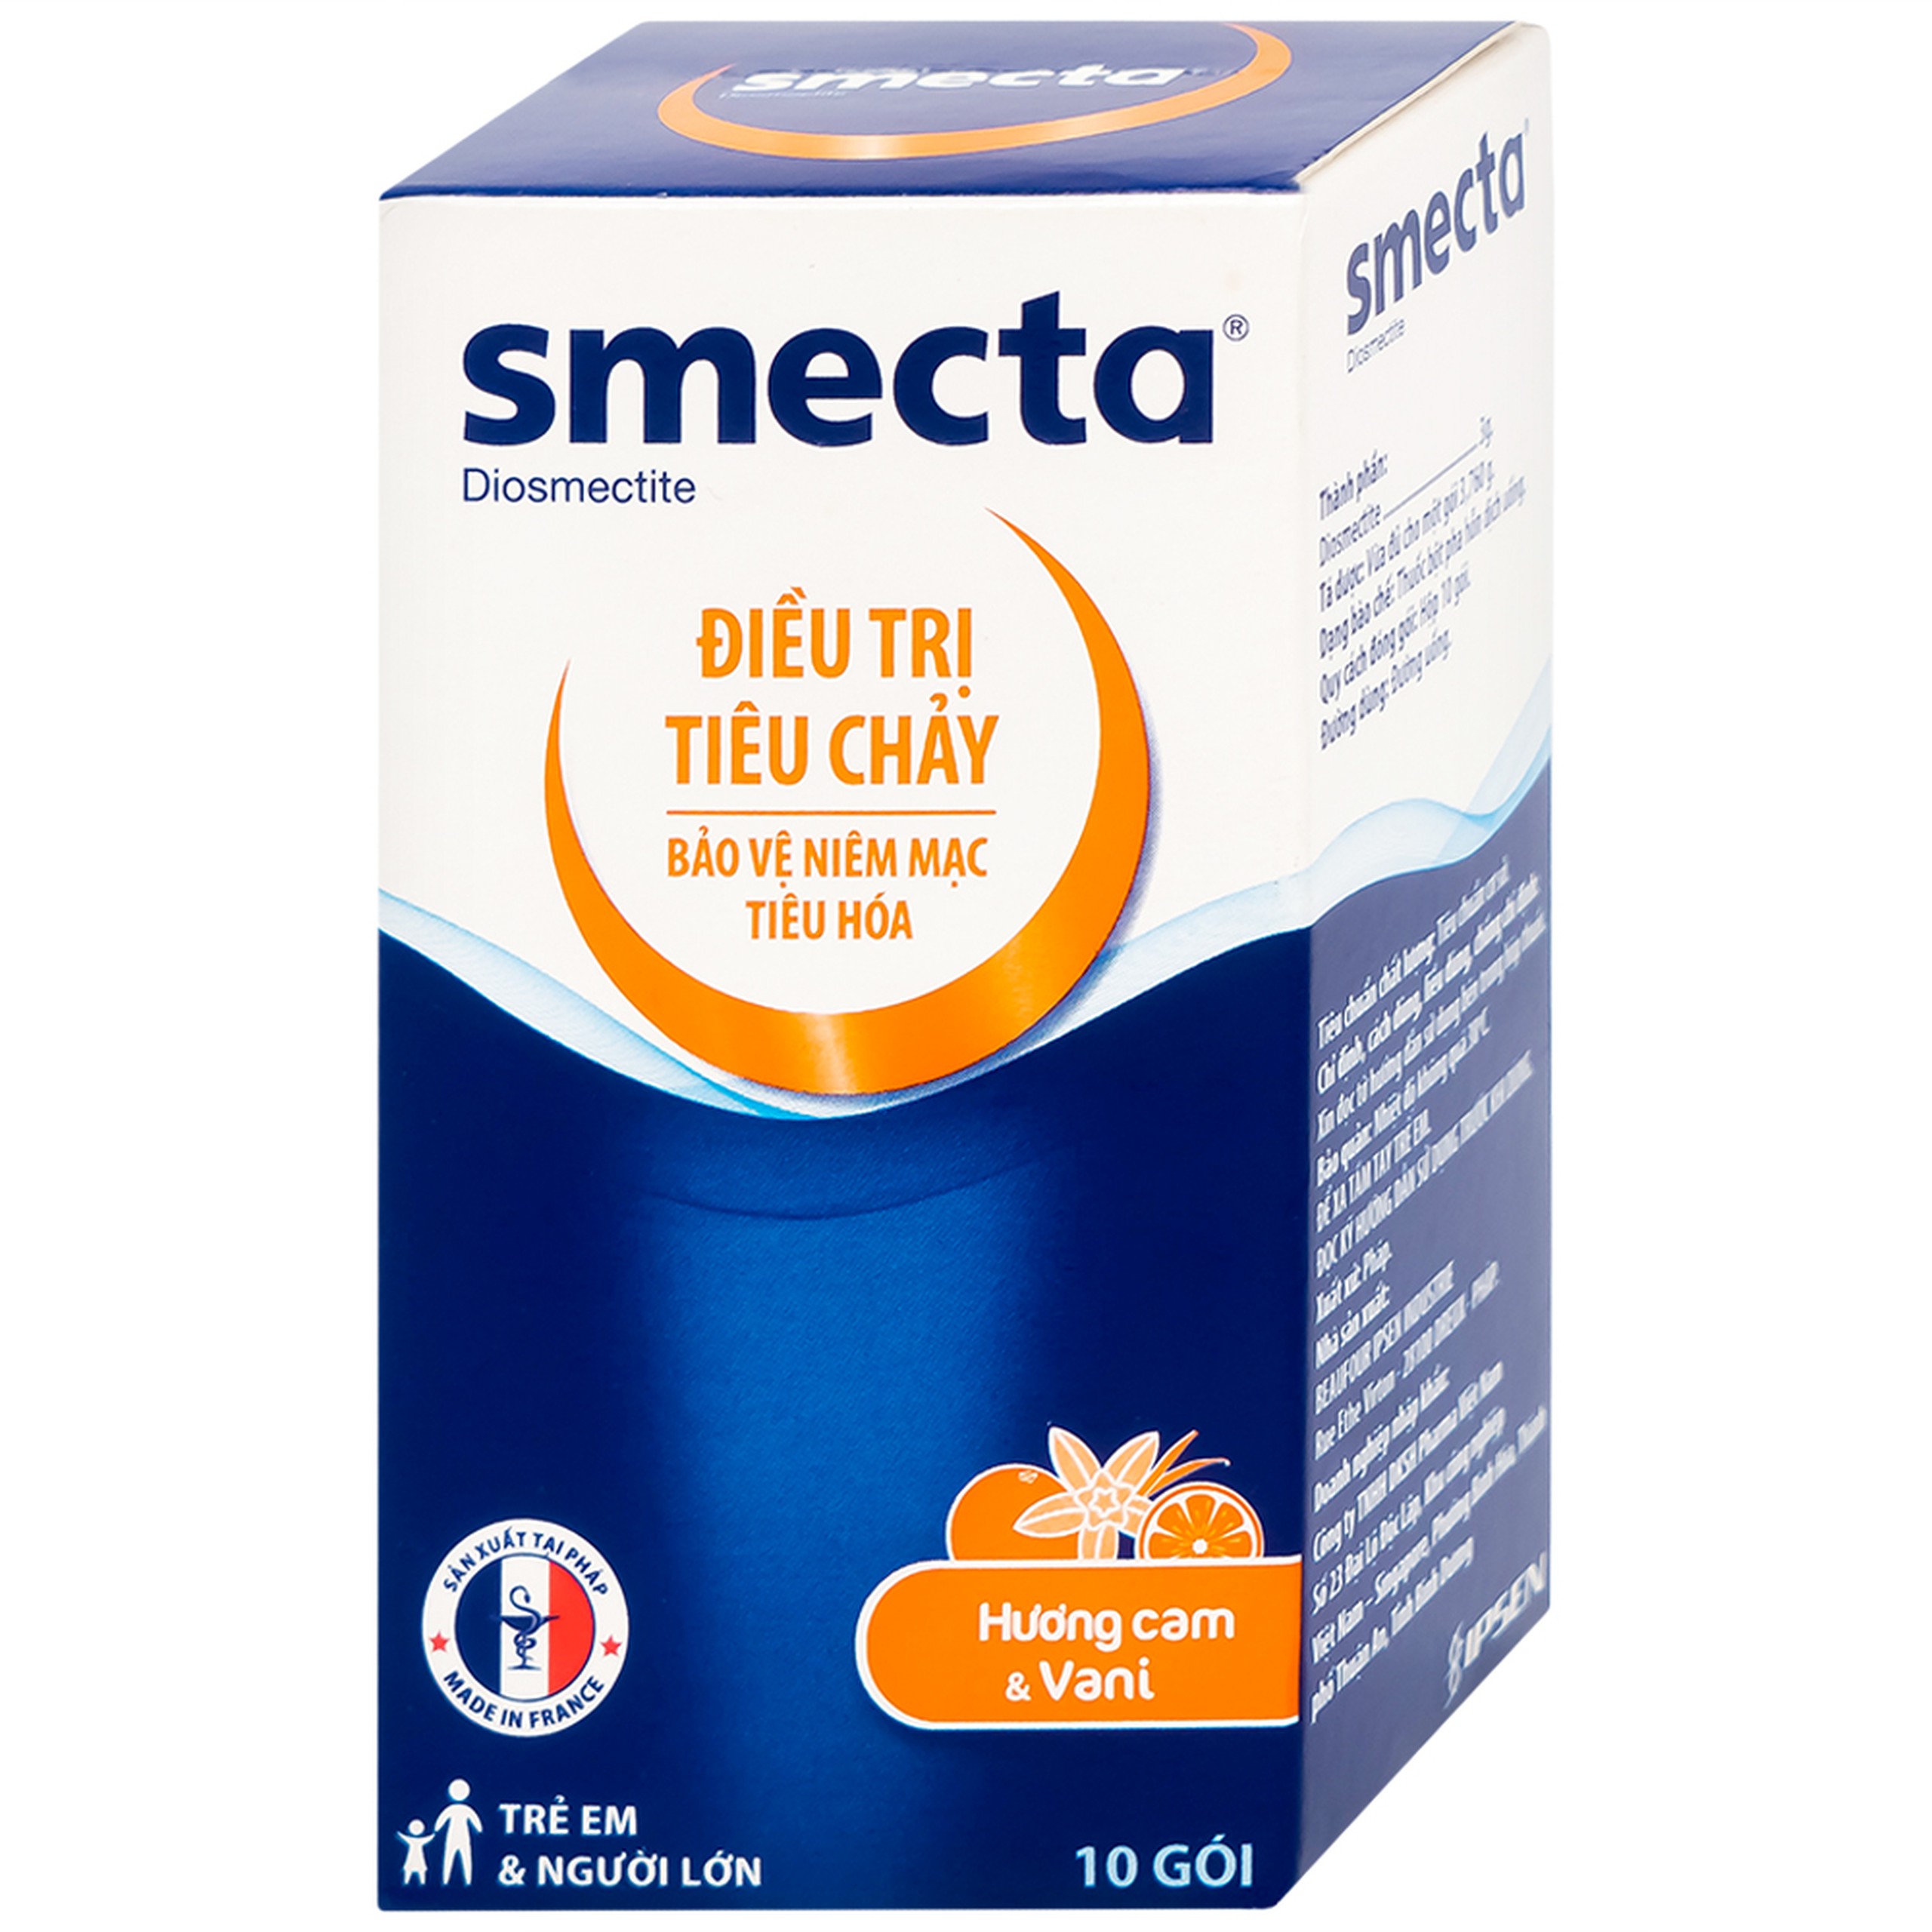 Thuốc bột Smecta Beaufour Ipsen hương cam & vani điều trị tiêu chảy, bảo vệ niêm mạc tiêu hoá (10 gói)